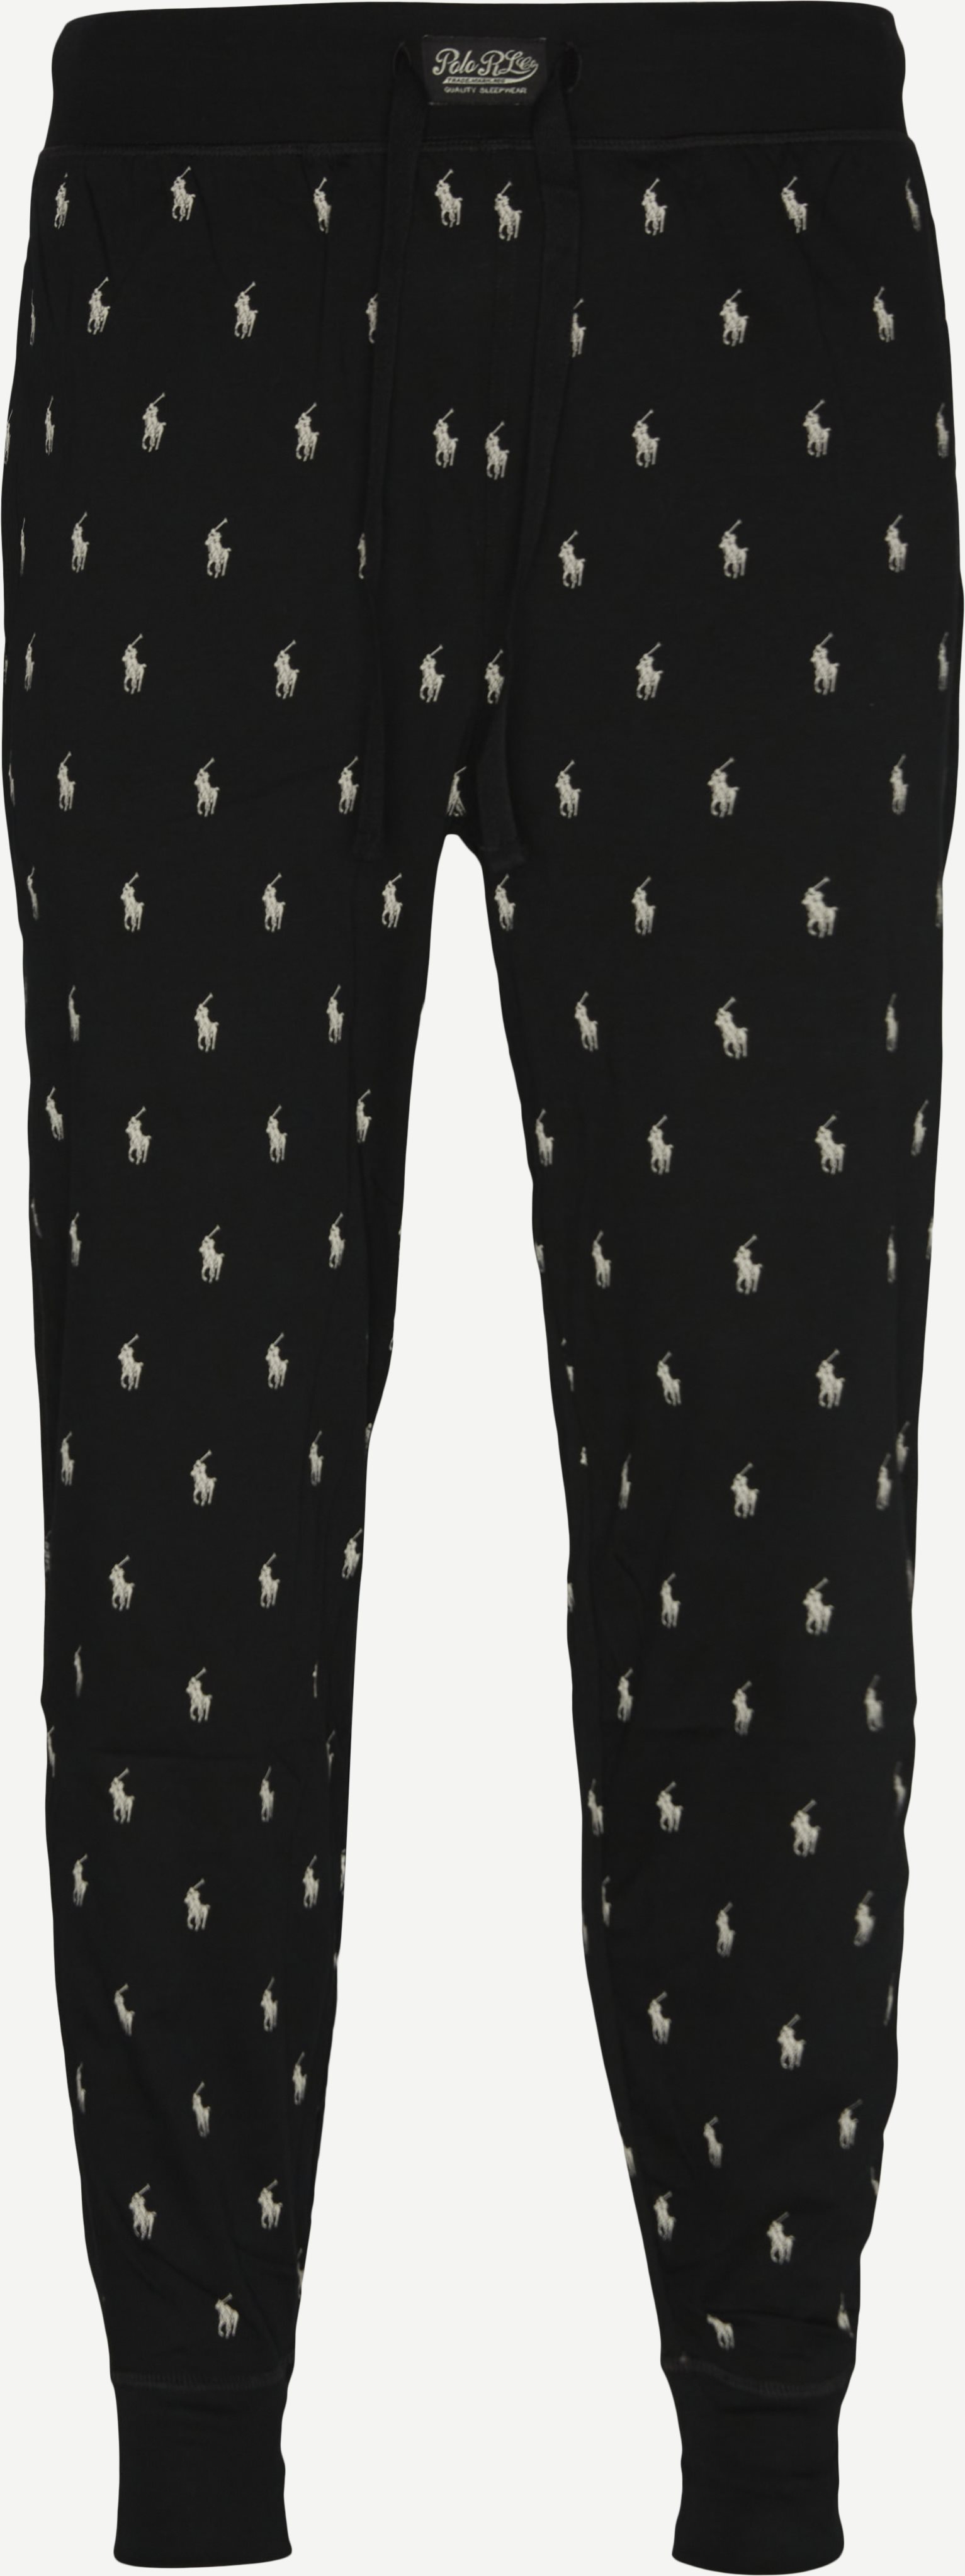 Pyjamasbyxor - Underkläder - Regular fit - Svart